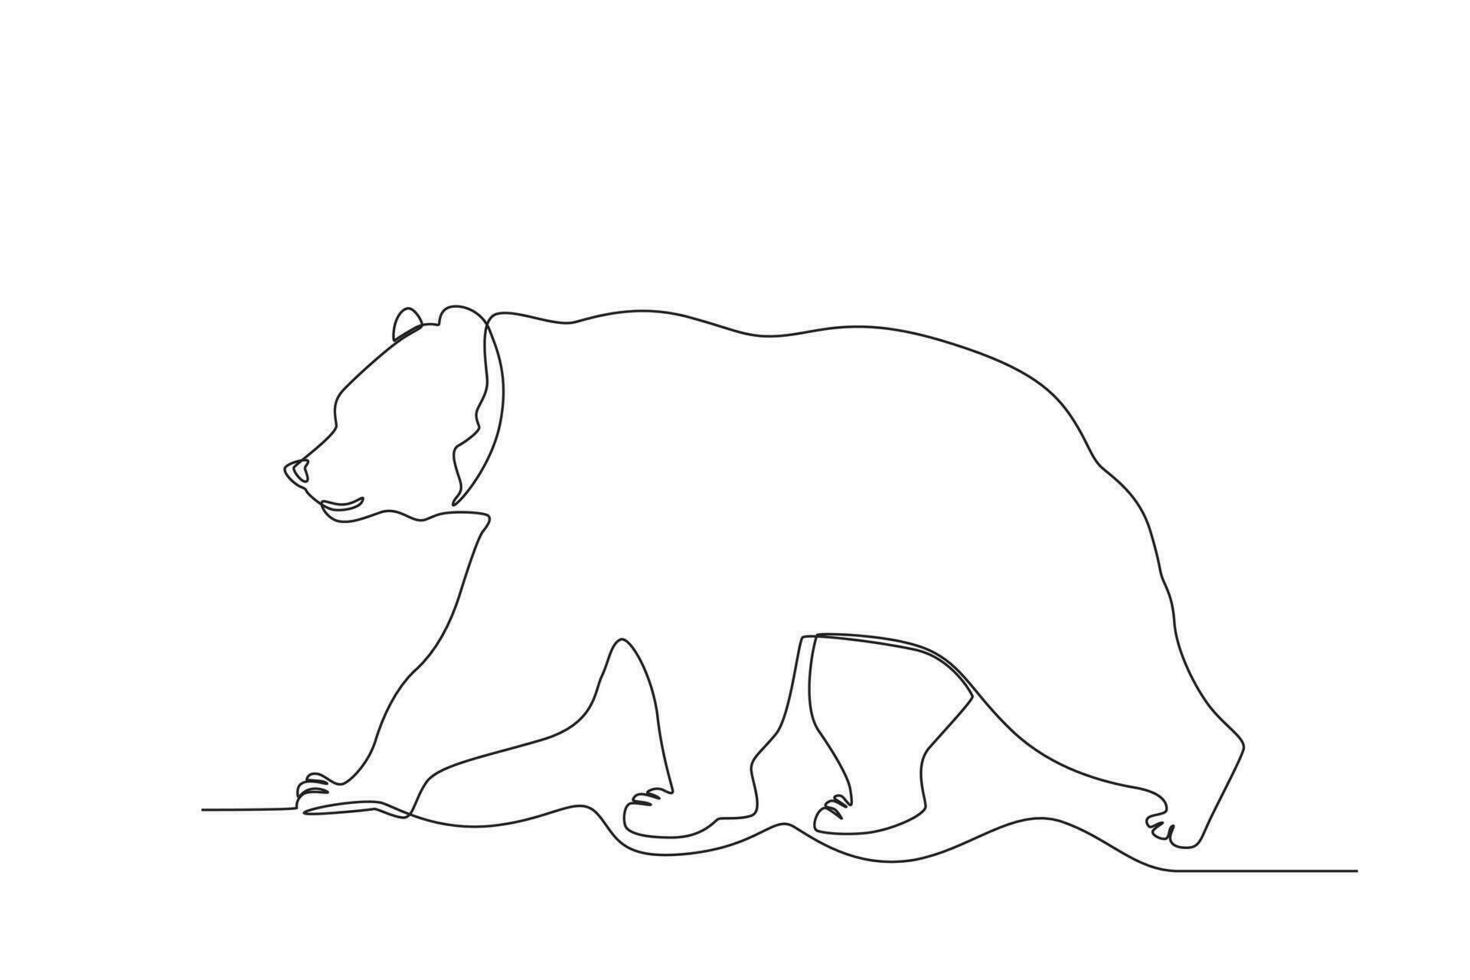 soltero uno línea dibujo de un oso. continuo línea dibujar diseño gráfico vector ilustración.